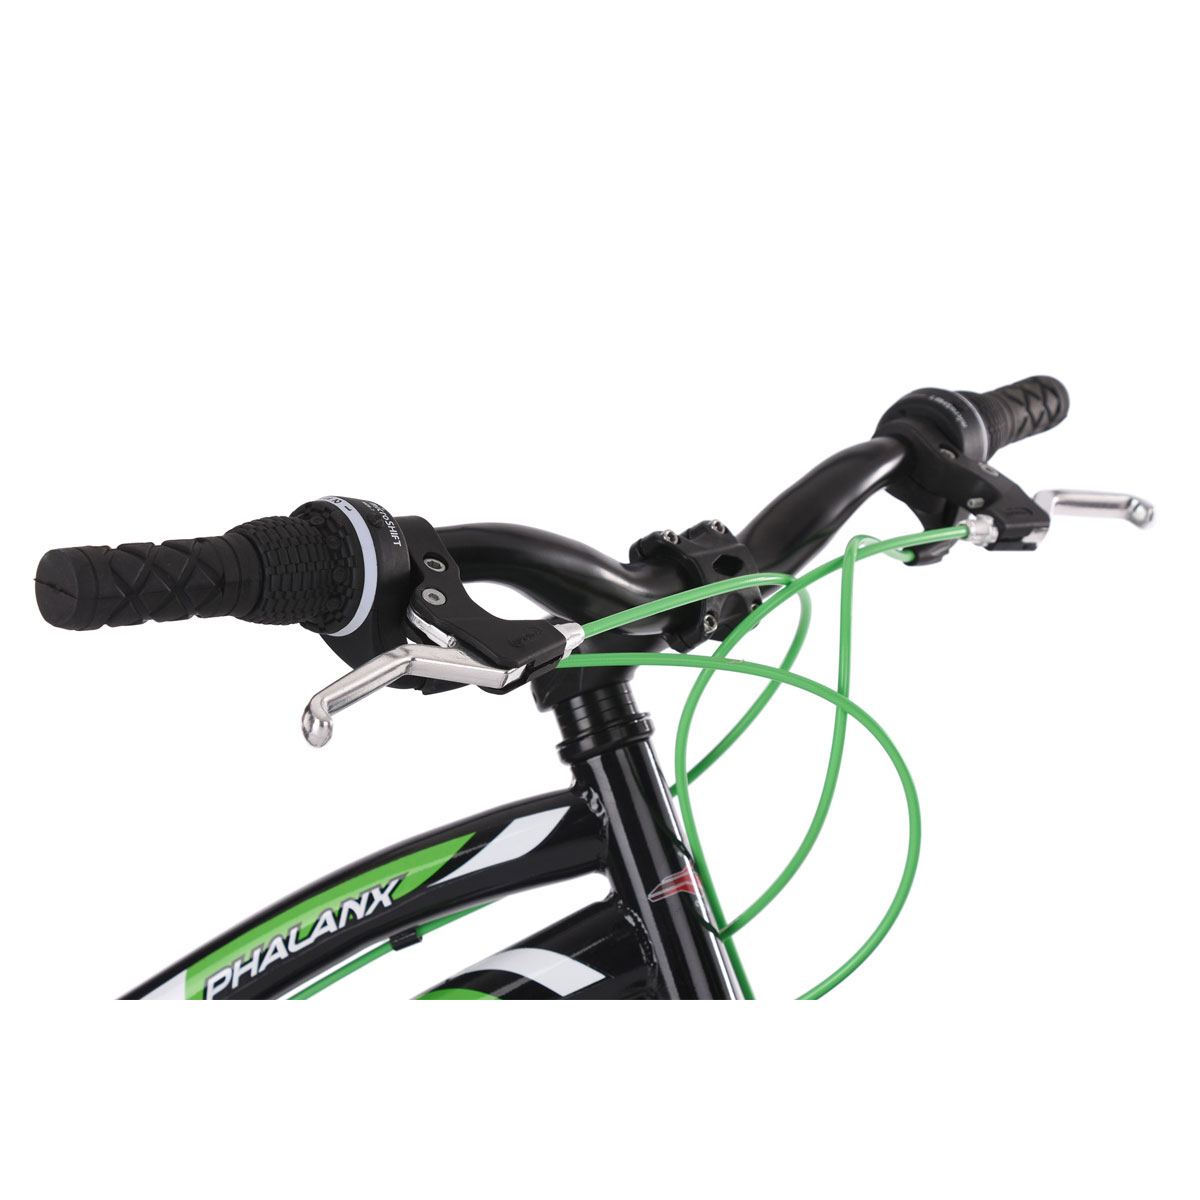 Mountainbike „Phalanx“, Hardtail, 24 Zoll, schwarz-weiß-grün